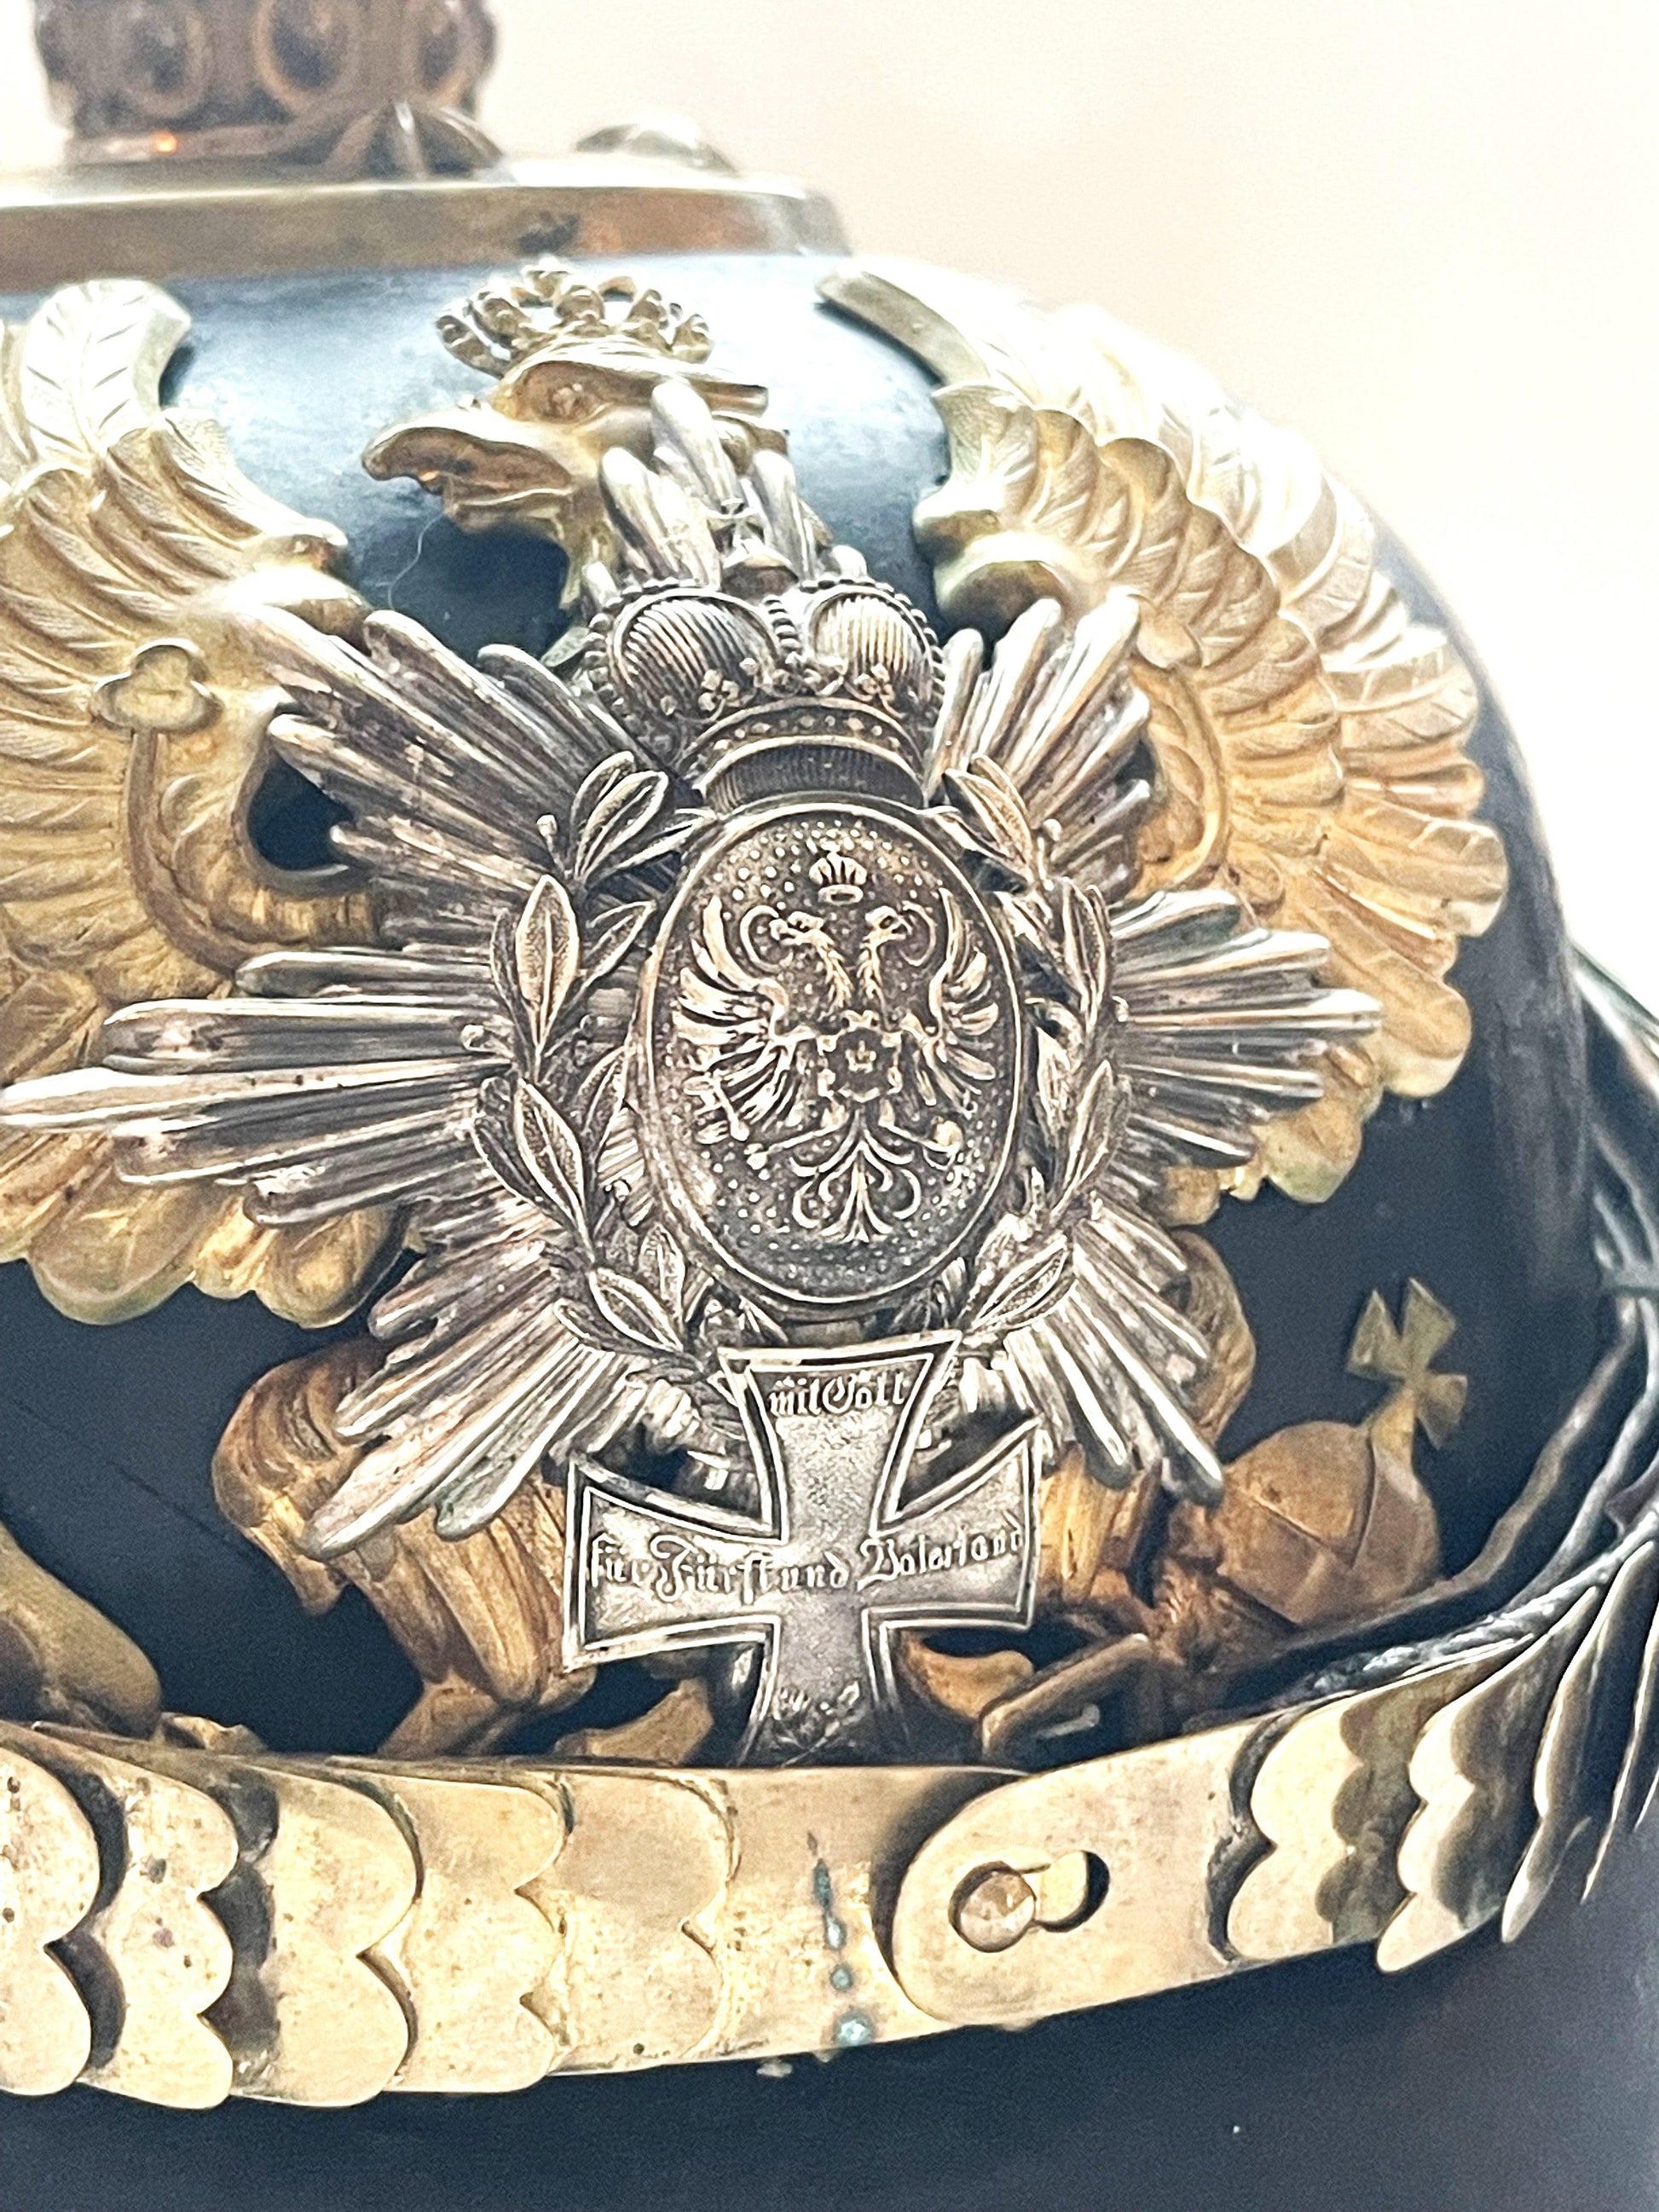 Schwarzburg Rudolstadt Pickelhaube / Spiked Helmet for Reserve Officer in Infanterie Rgt Nr 96 - Derrittmeister Militaria